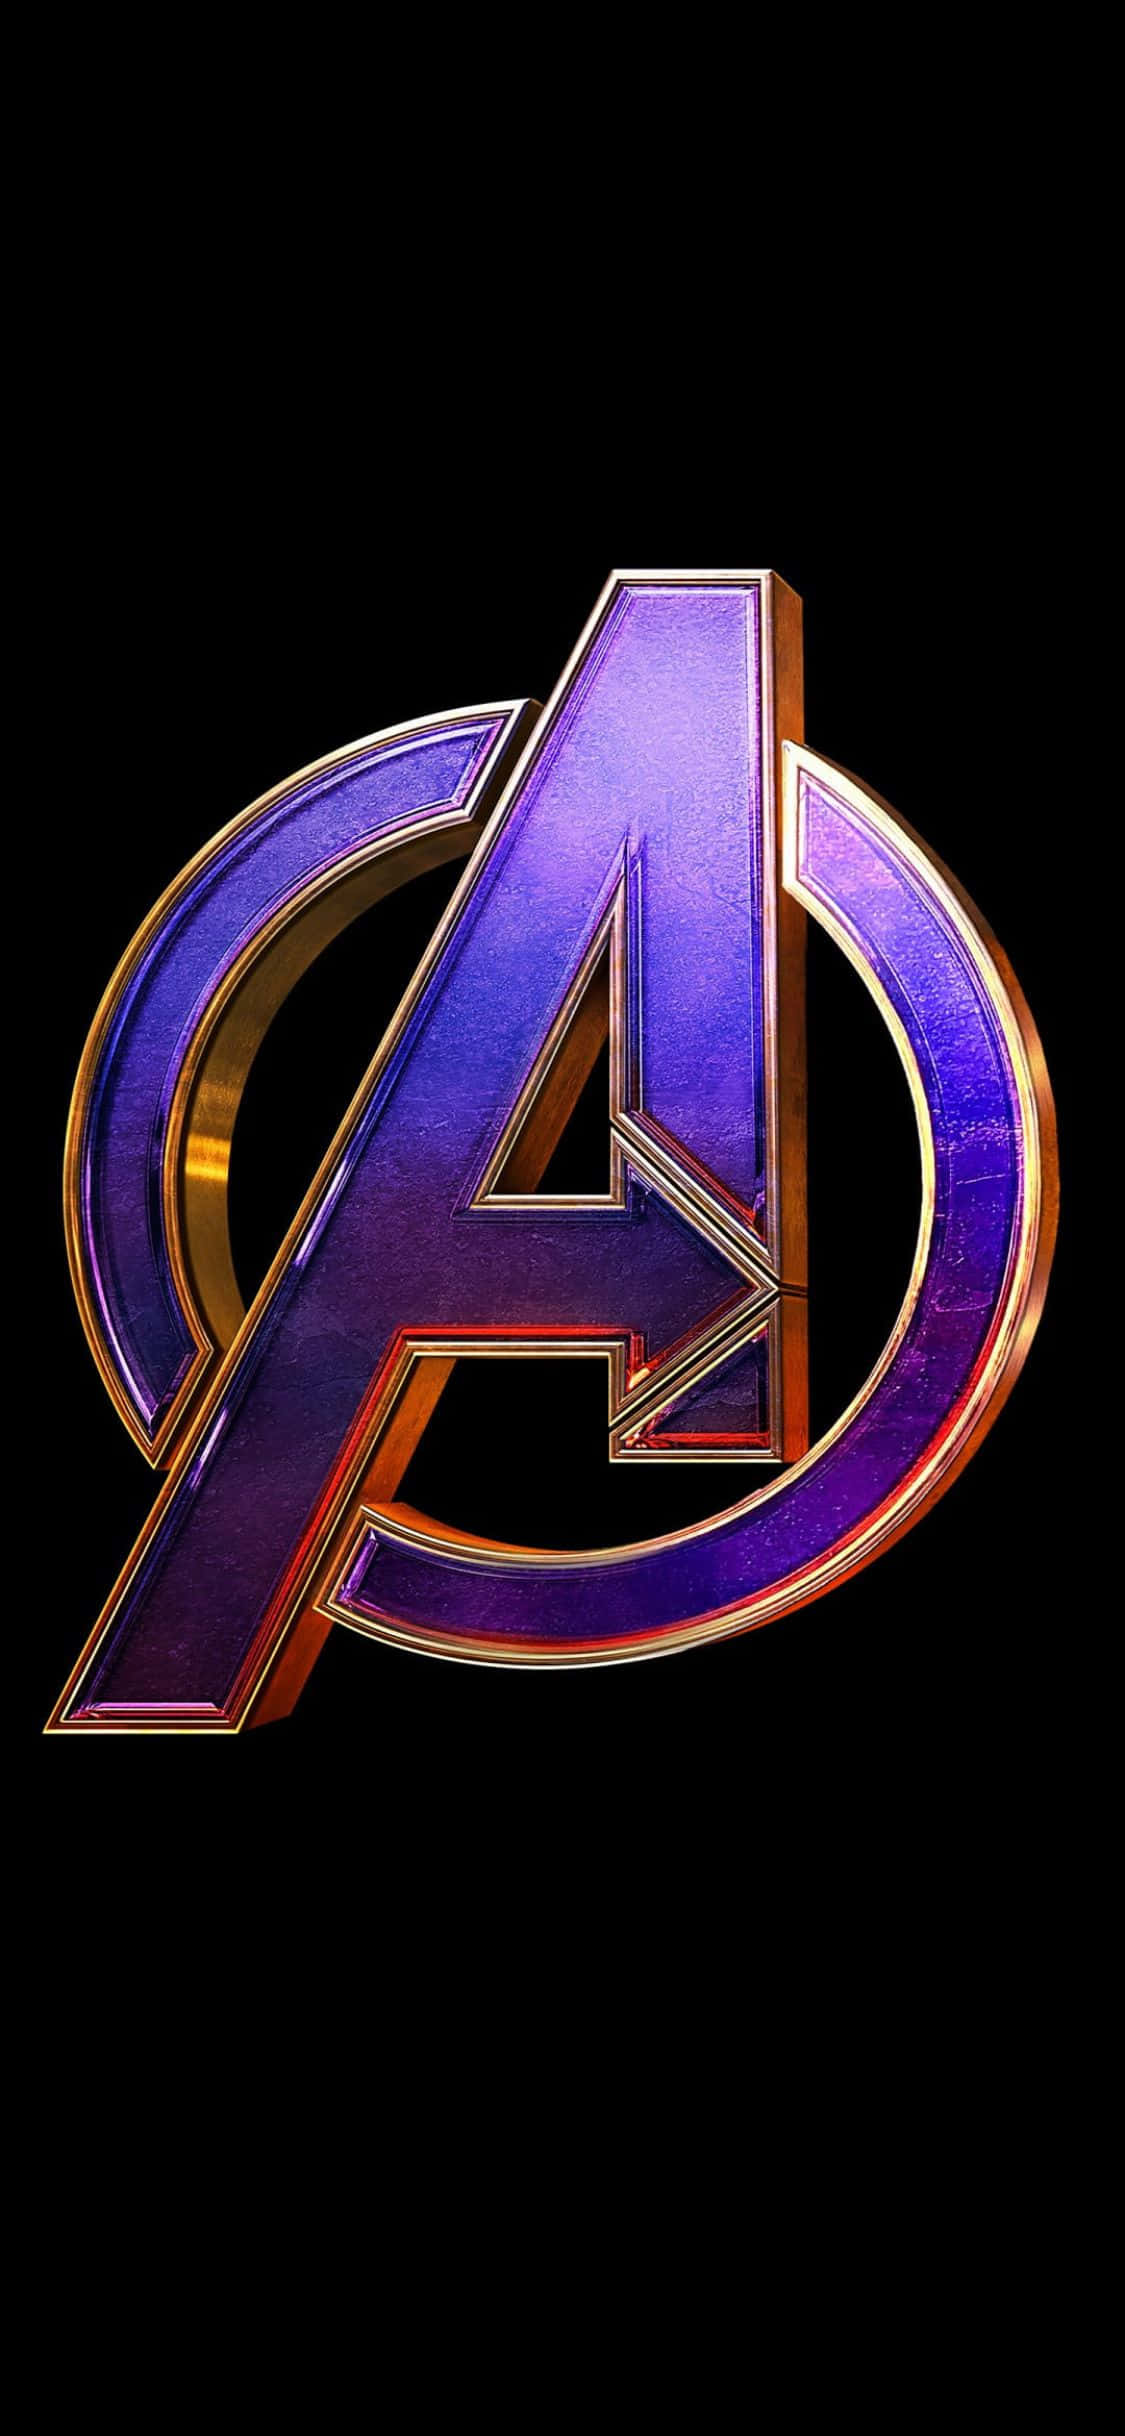 Fondode Pantalla Para Iphone Xs Con El Logo De Los Avengers En Color Morado.